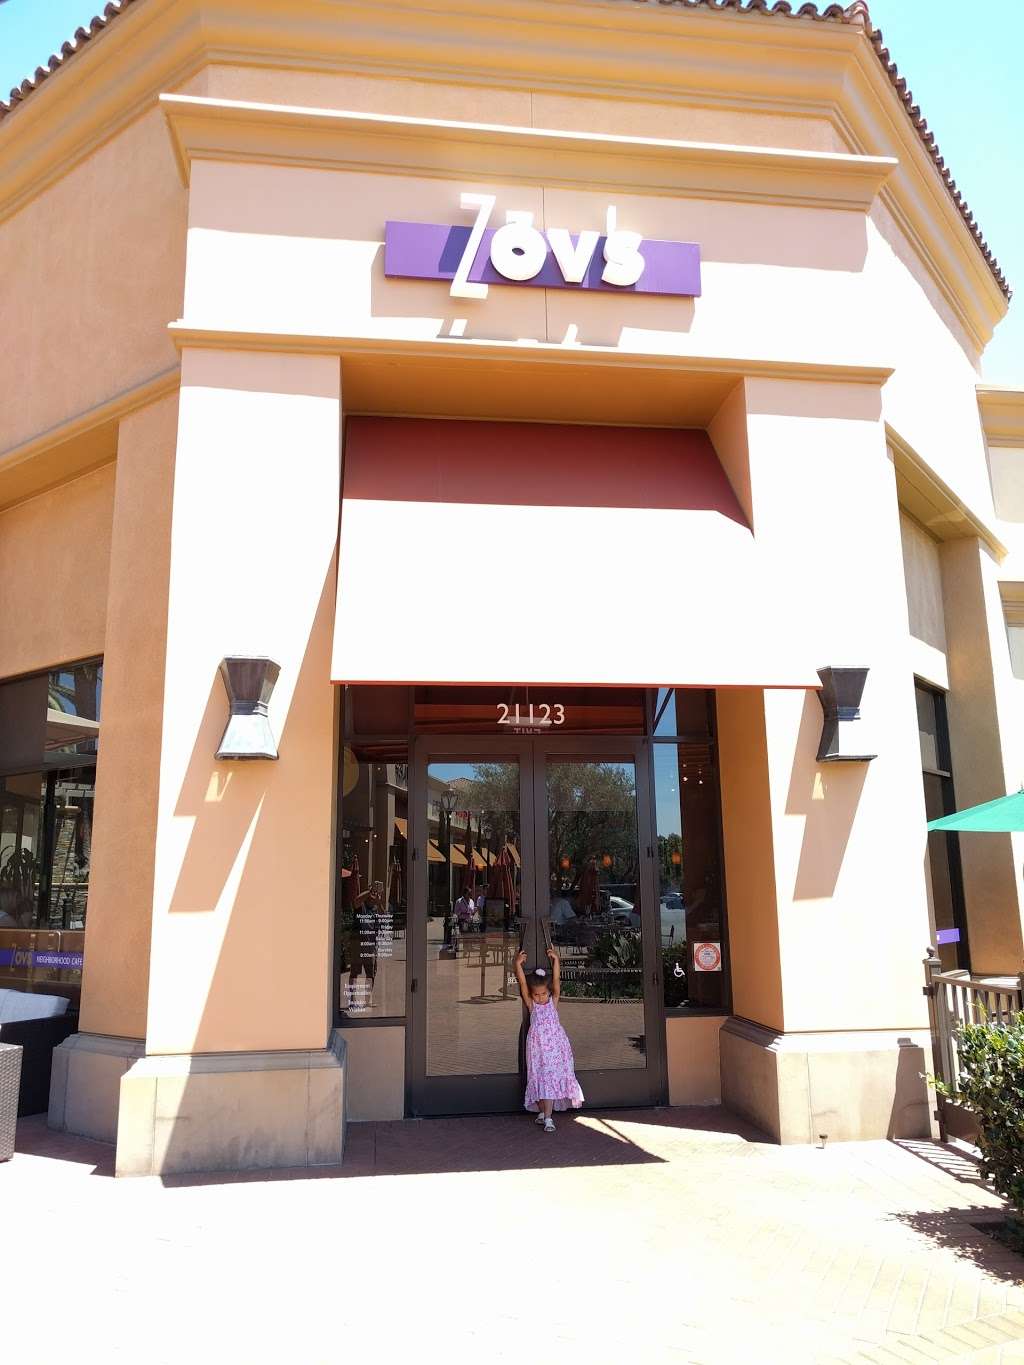 Zovs Restaurant Newport | 21123 Newport Coast Dr, Newport Beach, CA 92657 | Phone: (949) 760-9687